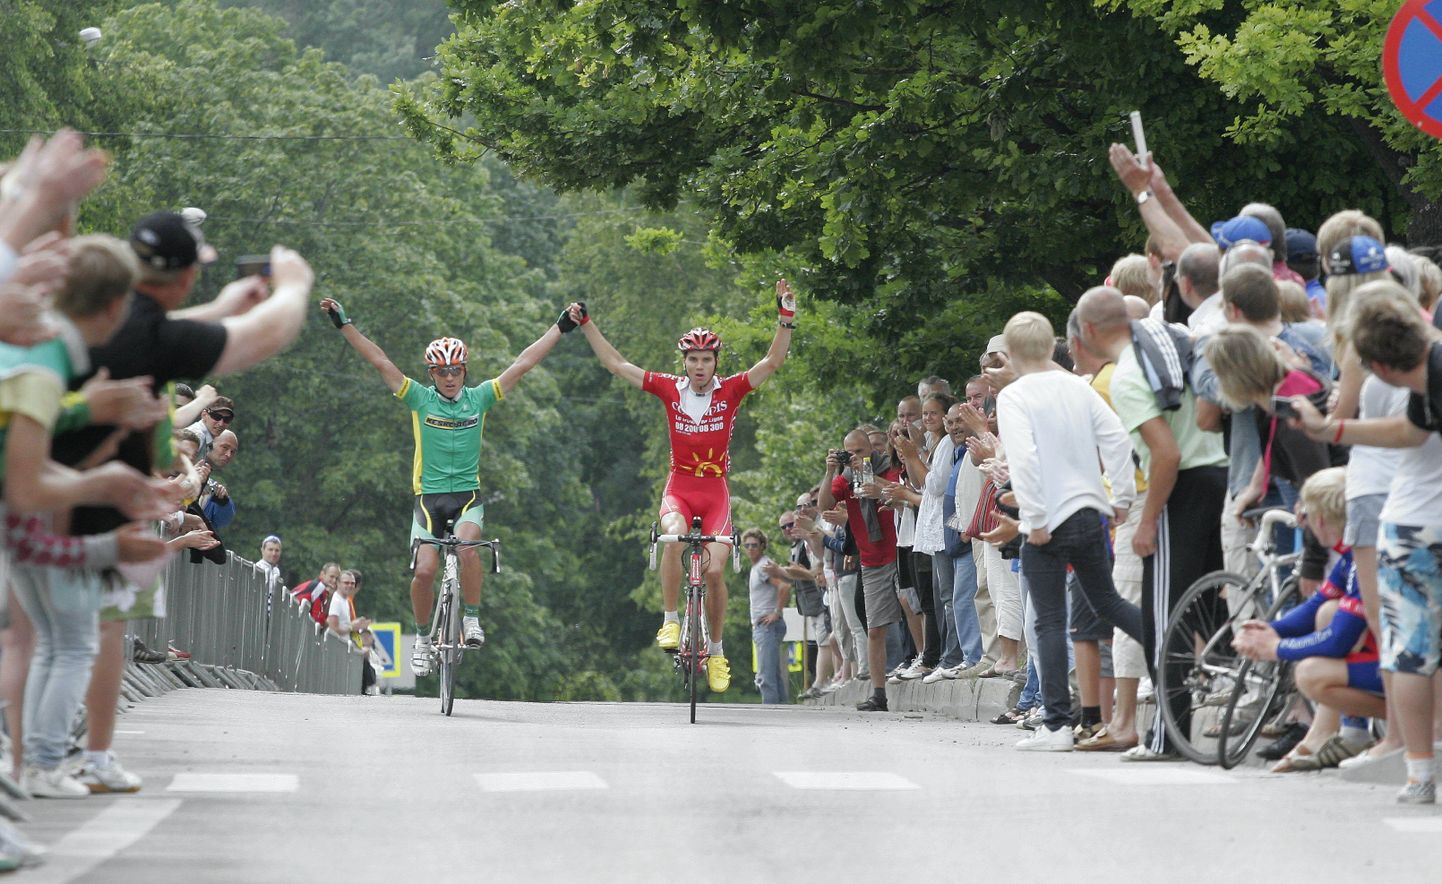 Nädalavahetusel peeti Viljandimaal jalgrattaspordi meistrivõistlusi. Rein Taaramäe (punases) pälvis kuldmedali.